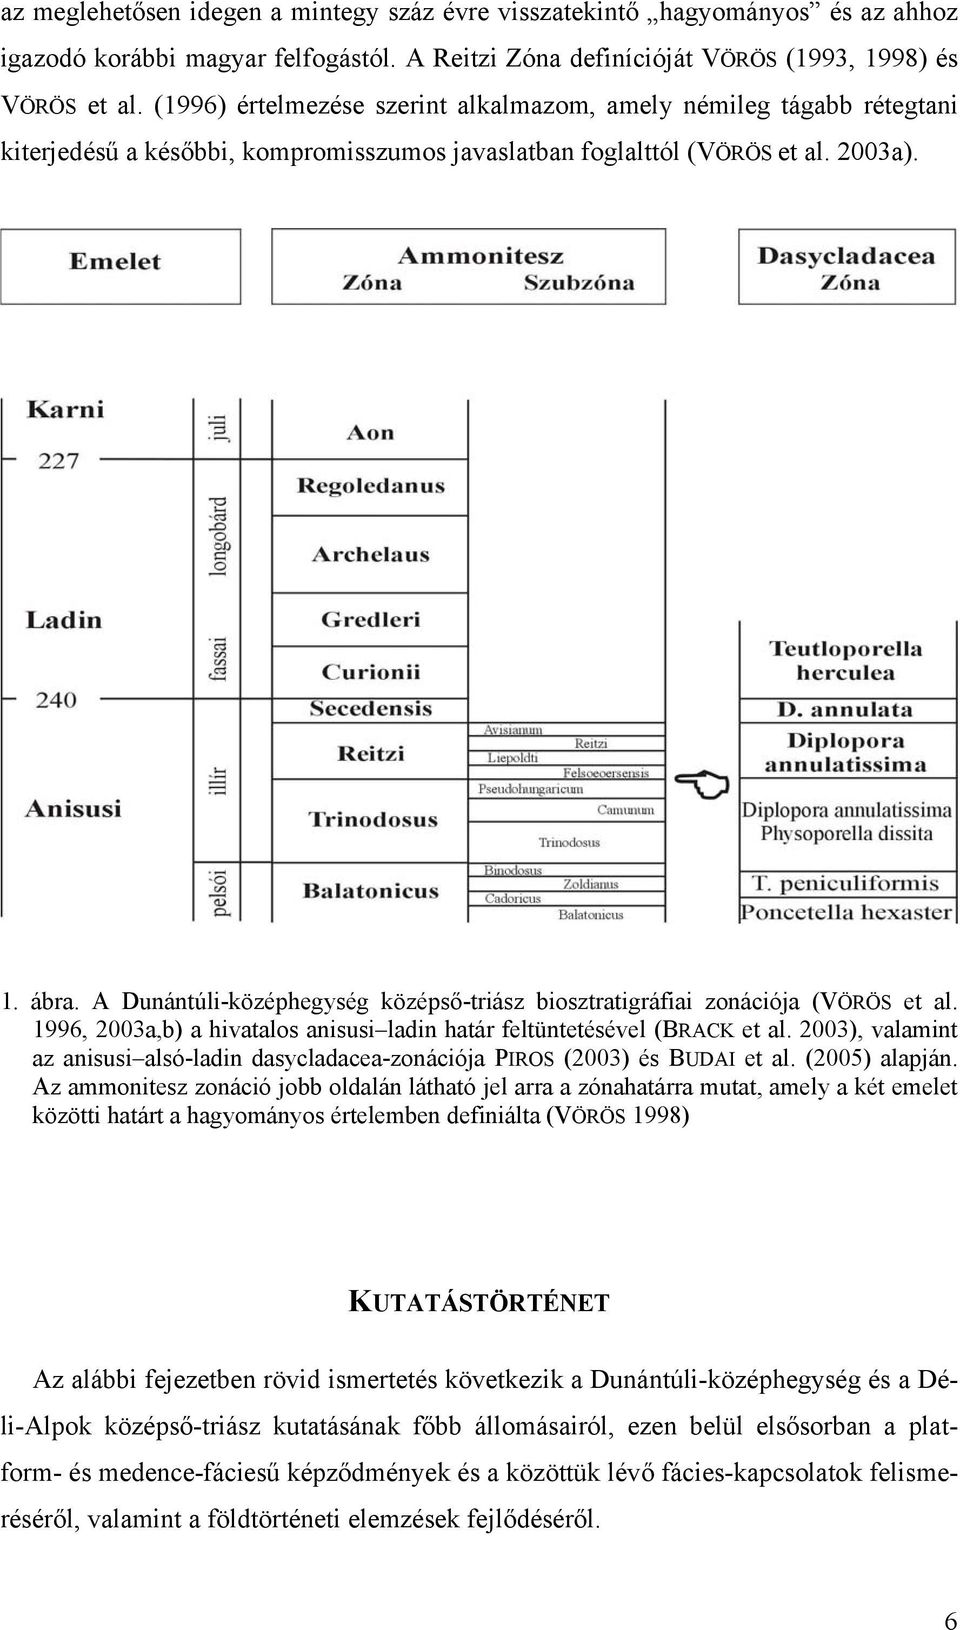 A Dunántúli-középhegység középső-triász biosztratigráfiai zonációja (VÖRÖS et al. 1996, 2003a,b) a hivatalos anisusi ladin határ feltüntetésével (BRACK et al.